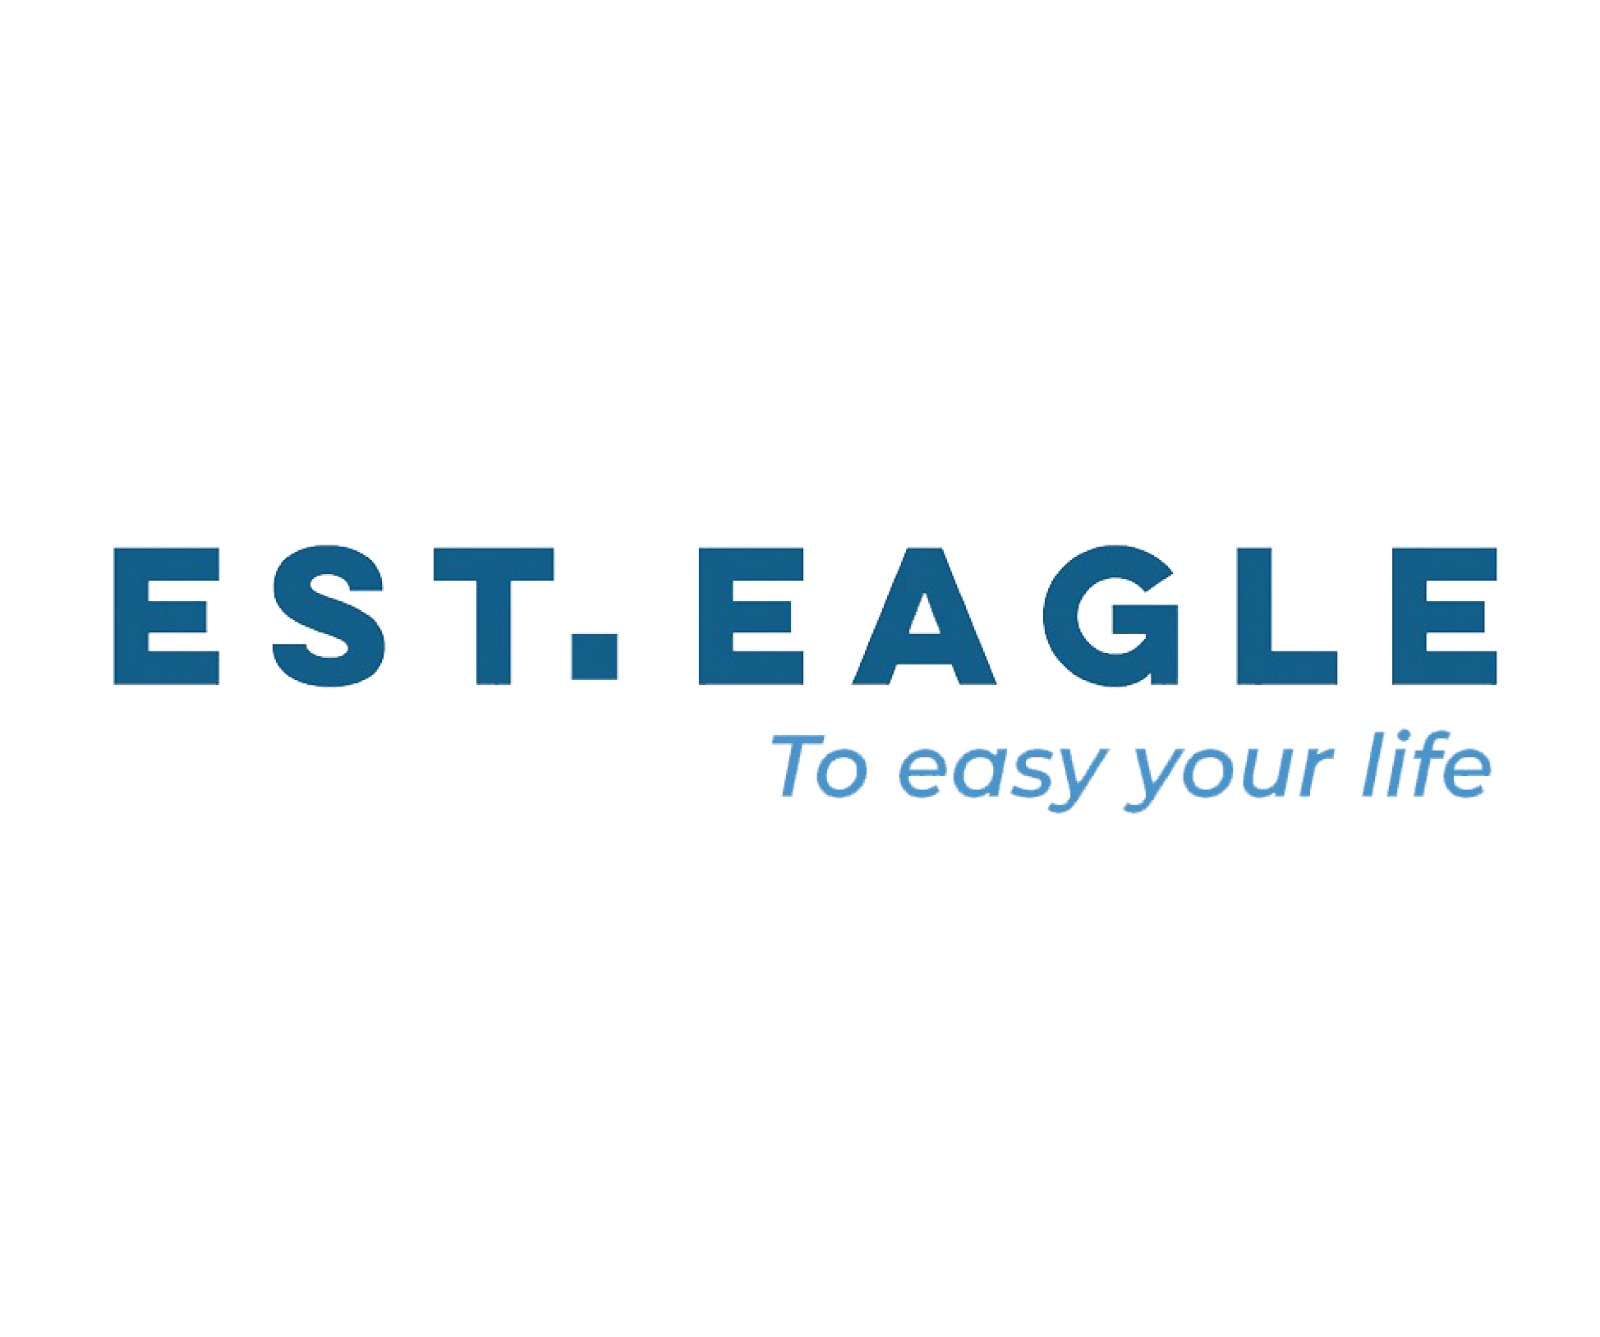 Esteagle logo